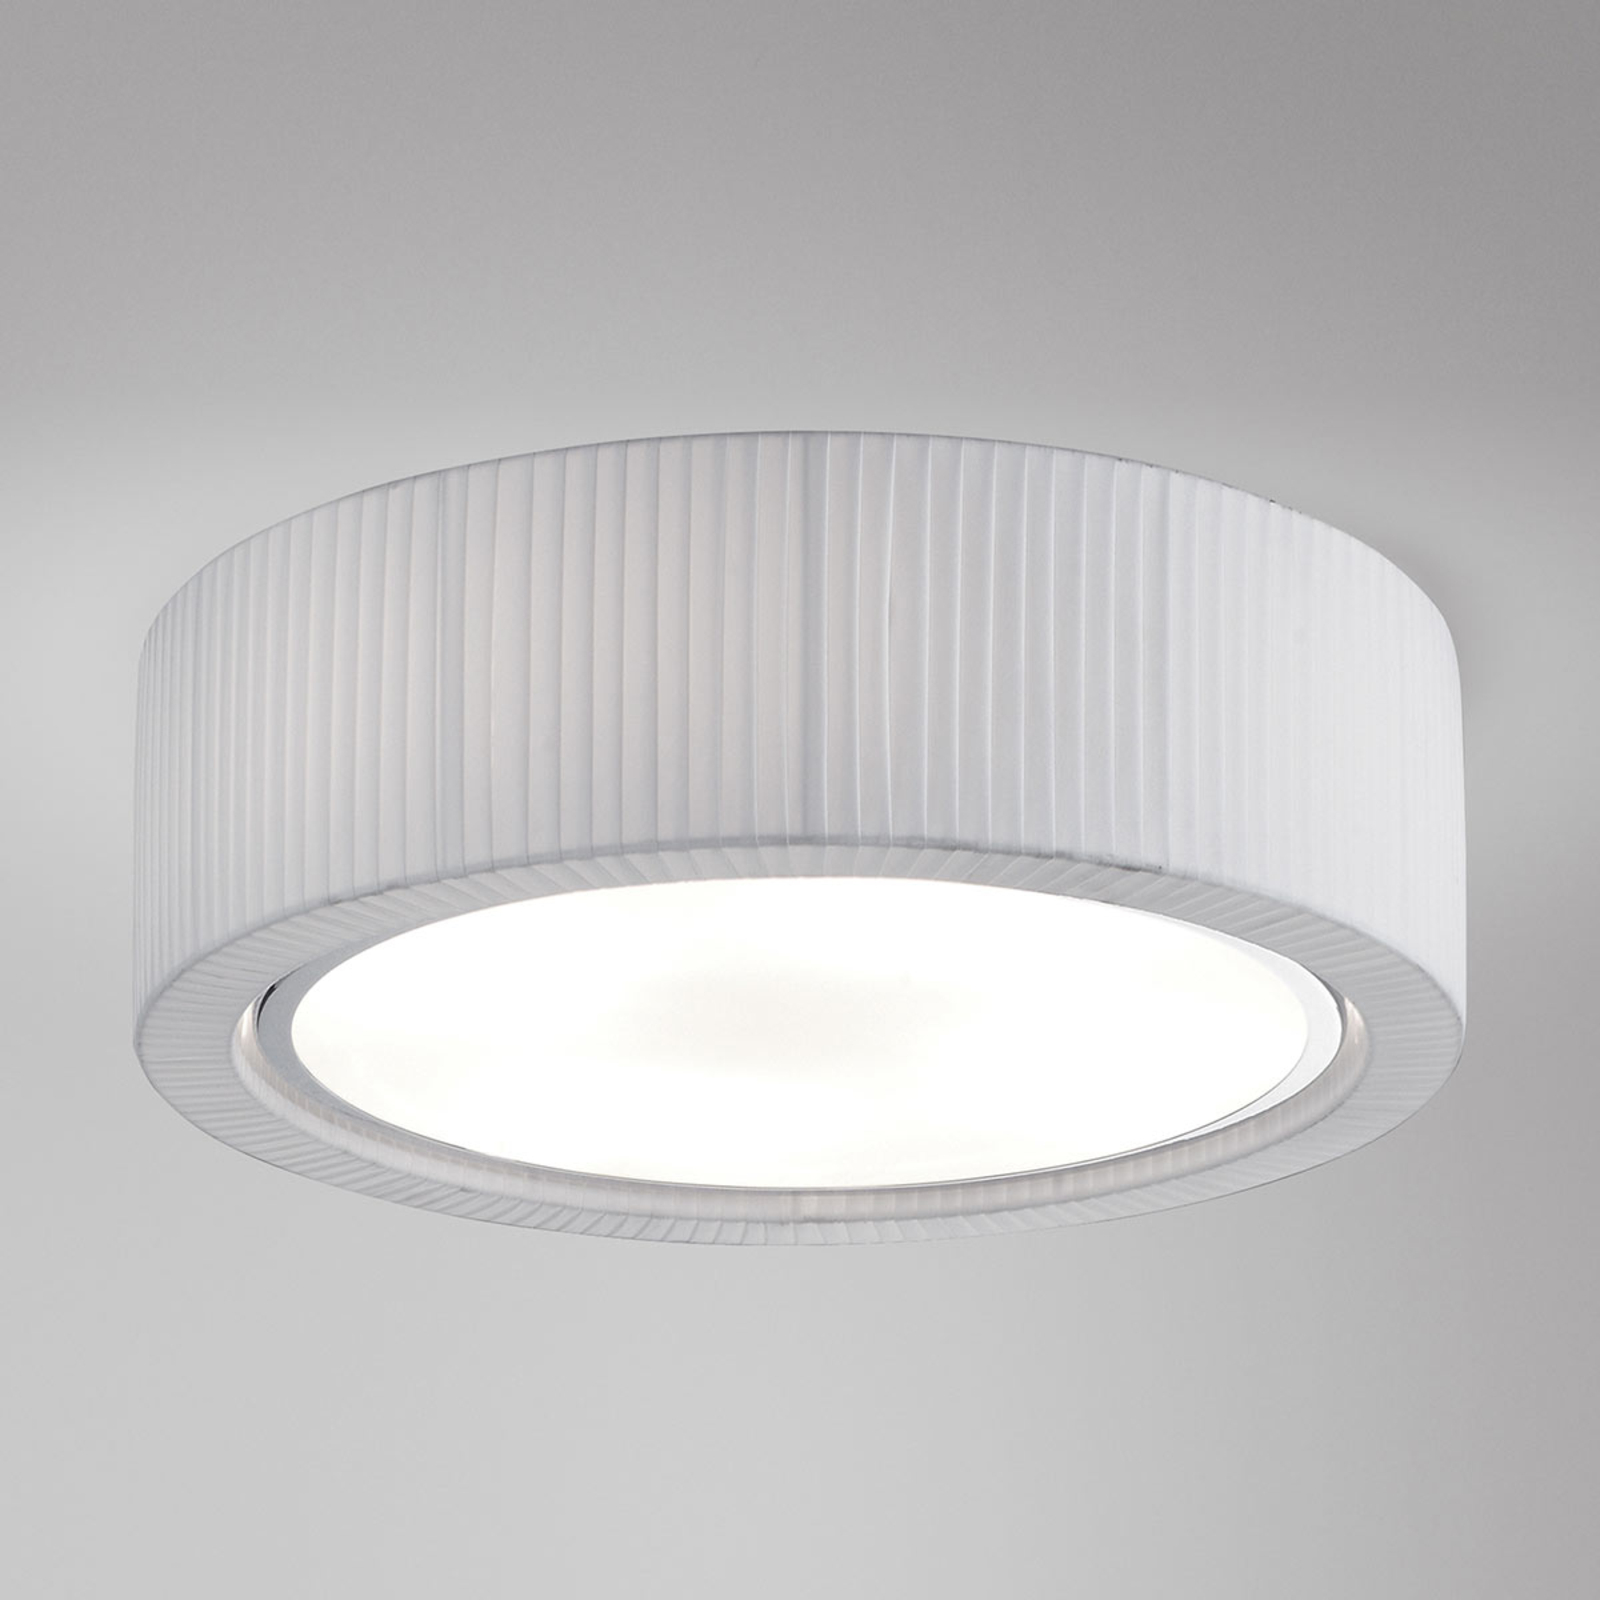 Bover Urban PF/37 ceiling light, white, 37 cm